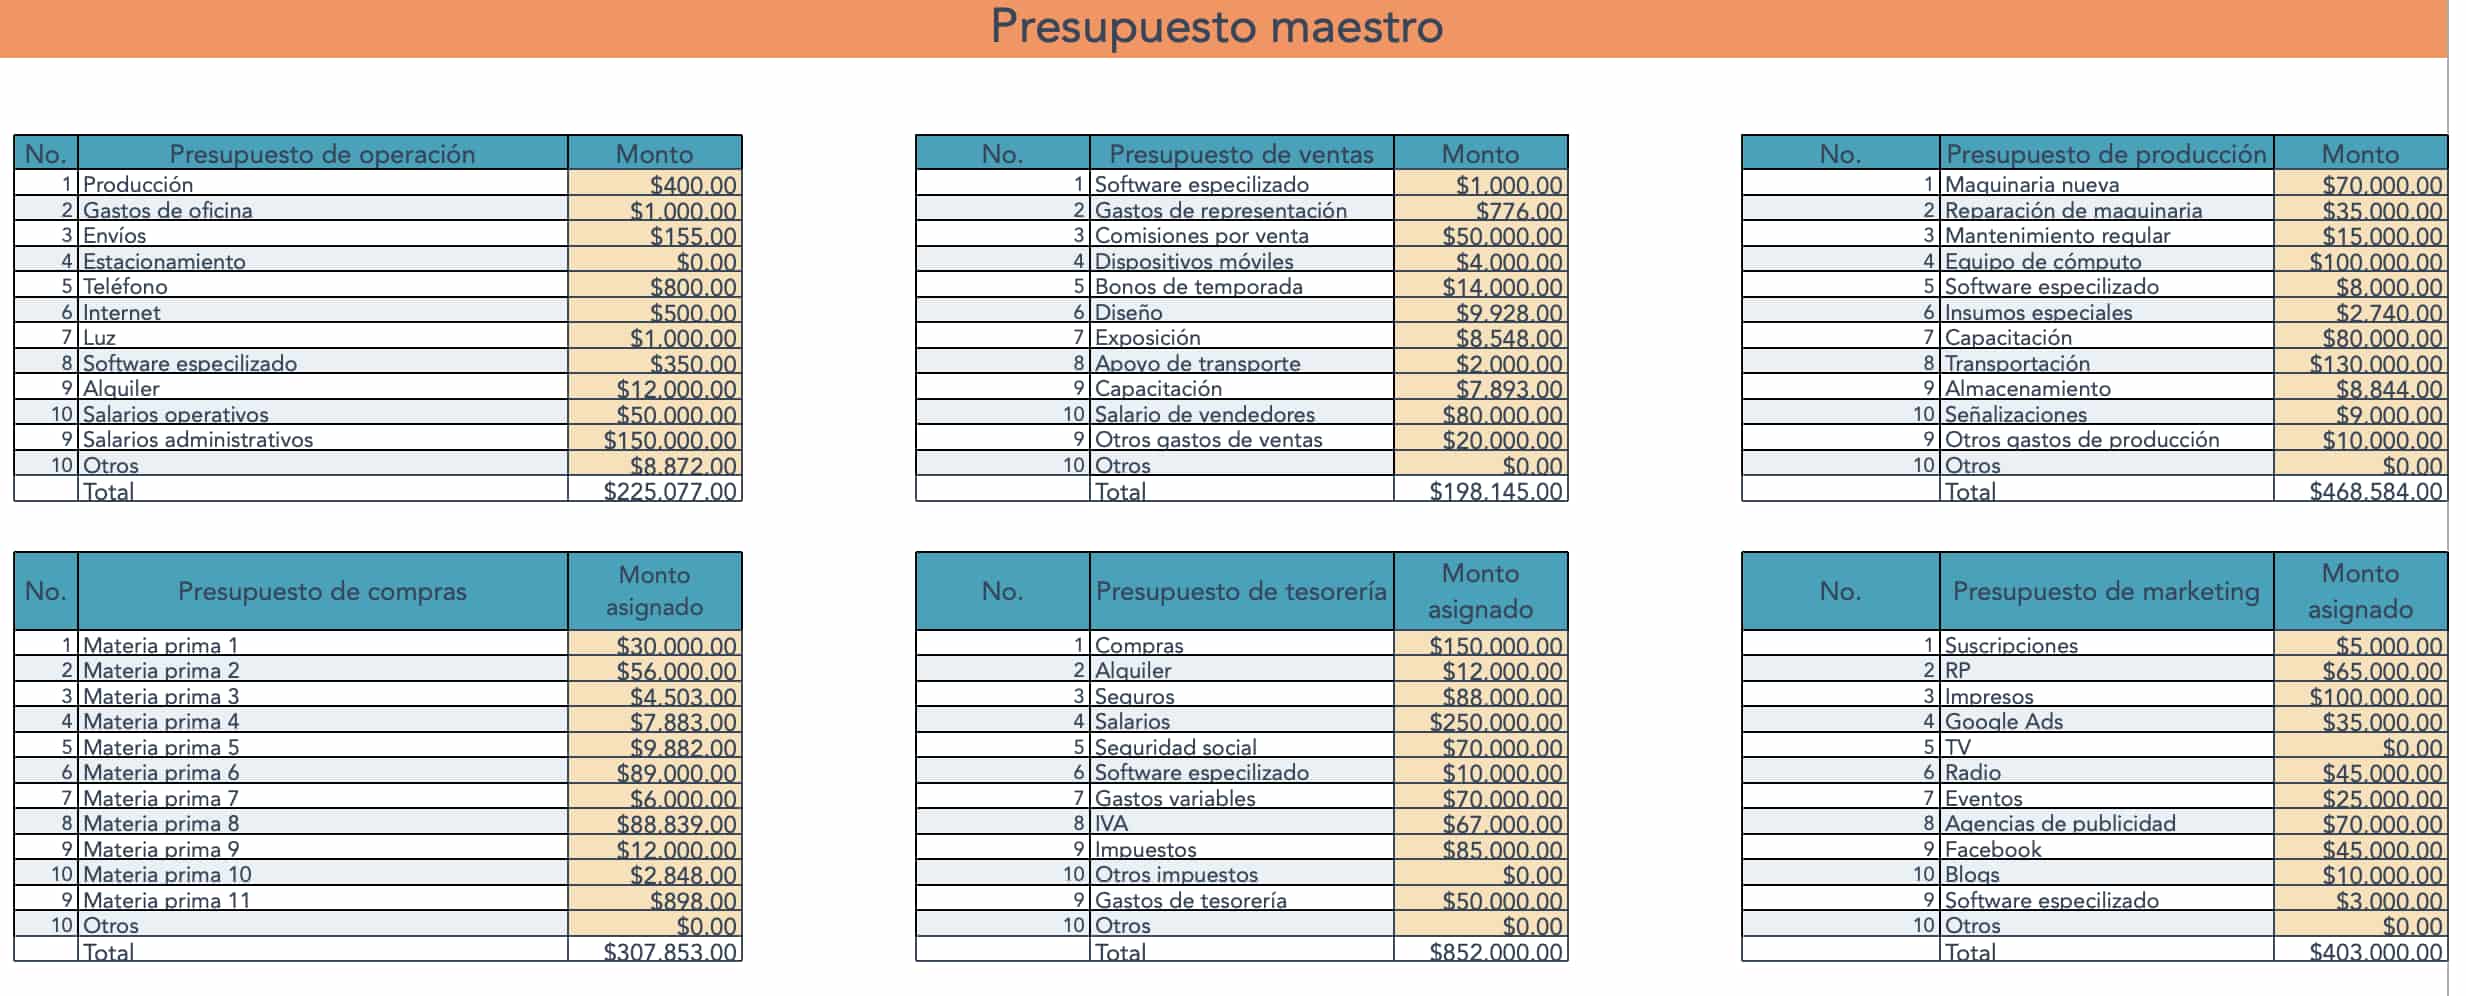 Tablas de presupuestos asignados en pestaña de Presupuesto maestro en plantilla de HubSpot para calcular los 8 tipos de presupuestos